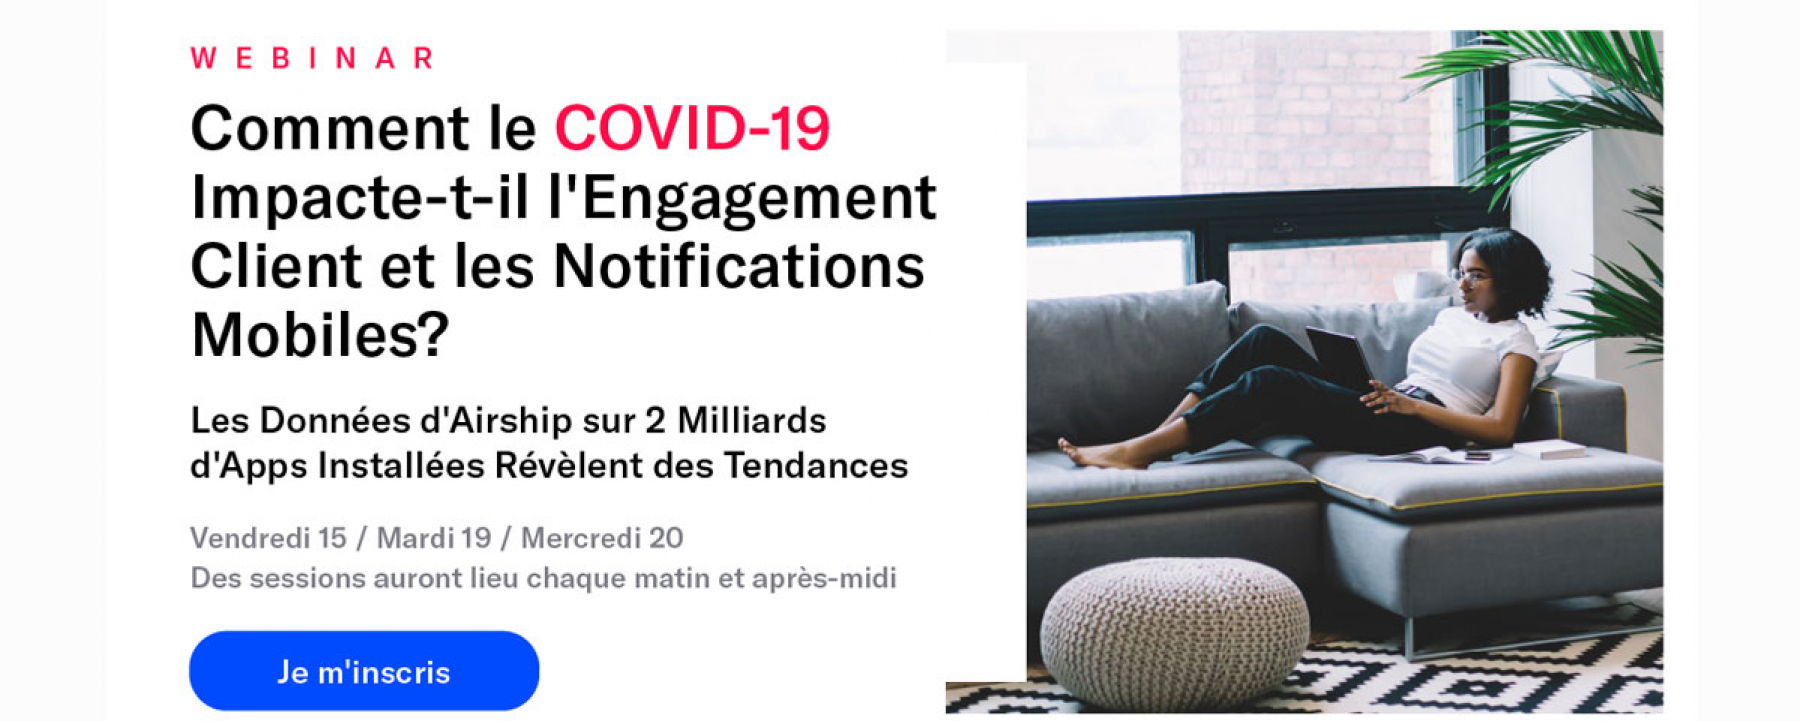 Comment le Covid 19 impact-t-il l'engagement client et les notifications mobiles ? par Airship